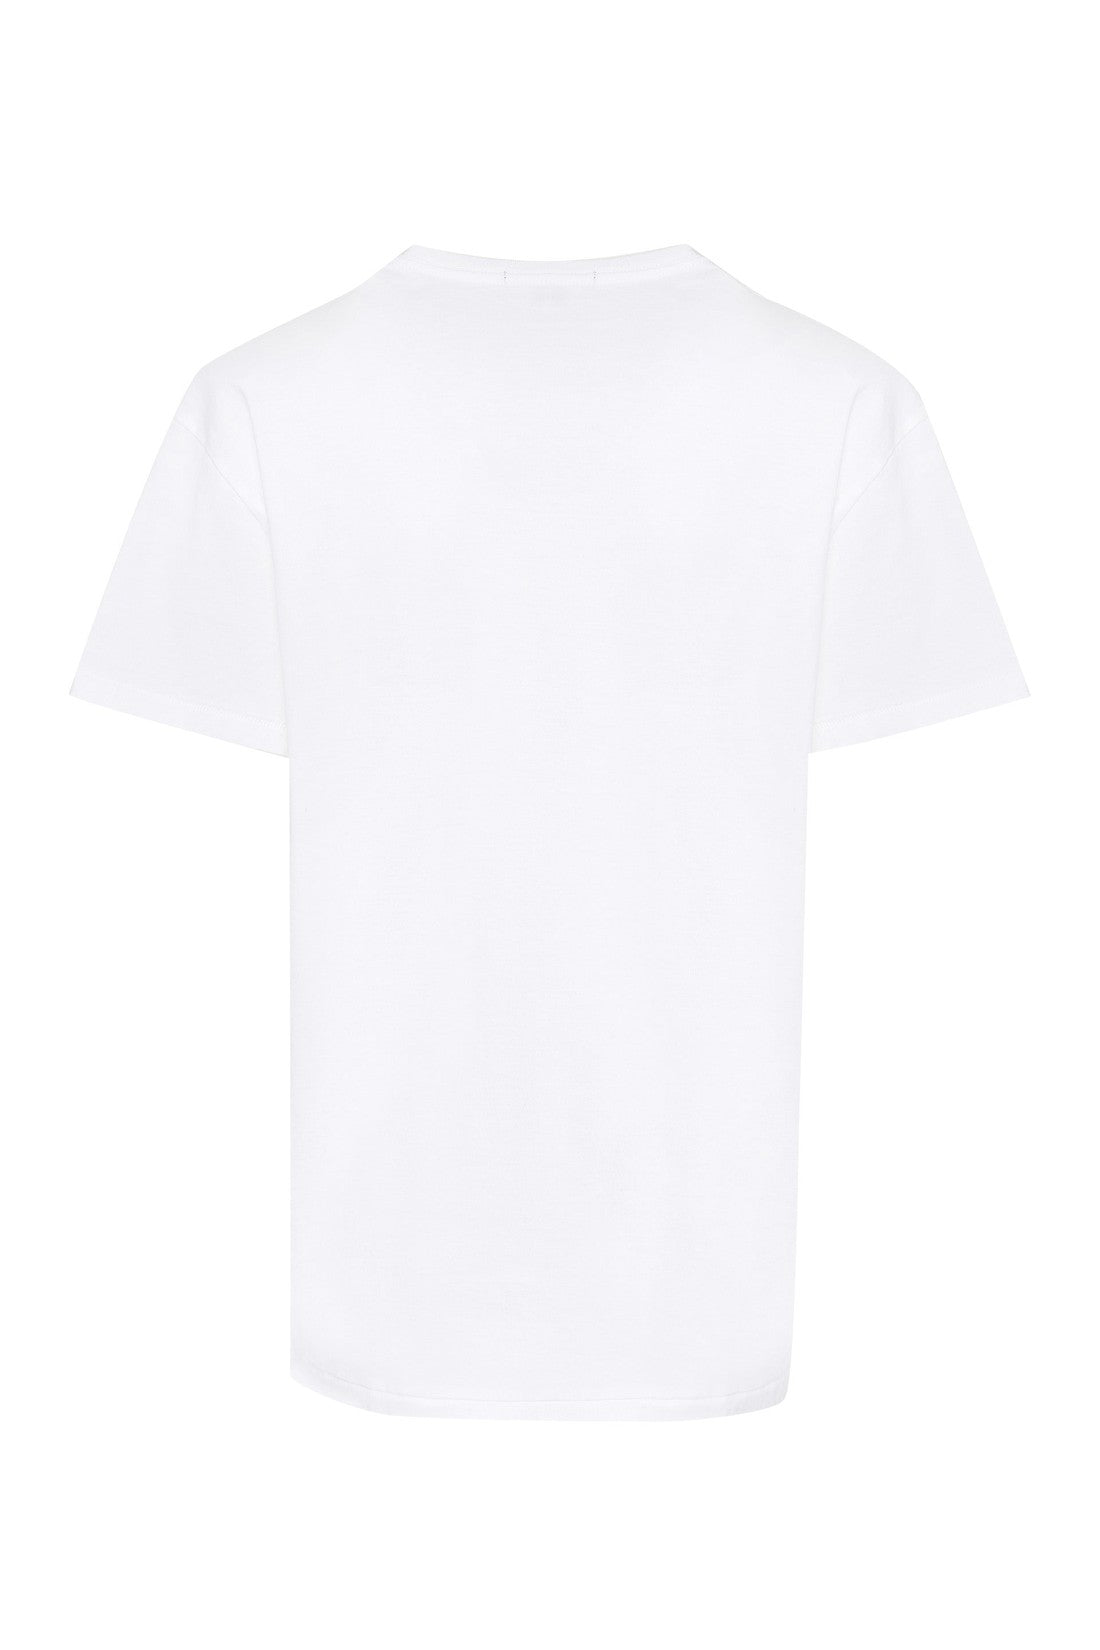 R13-OUTLET-SALE-Boy printed cotton t-shirt-ARCHIVIST